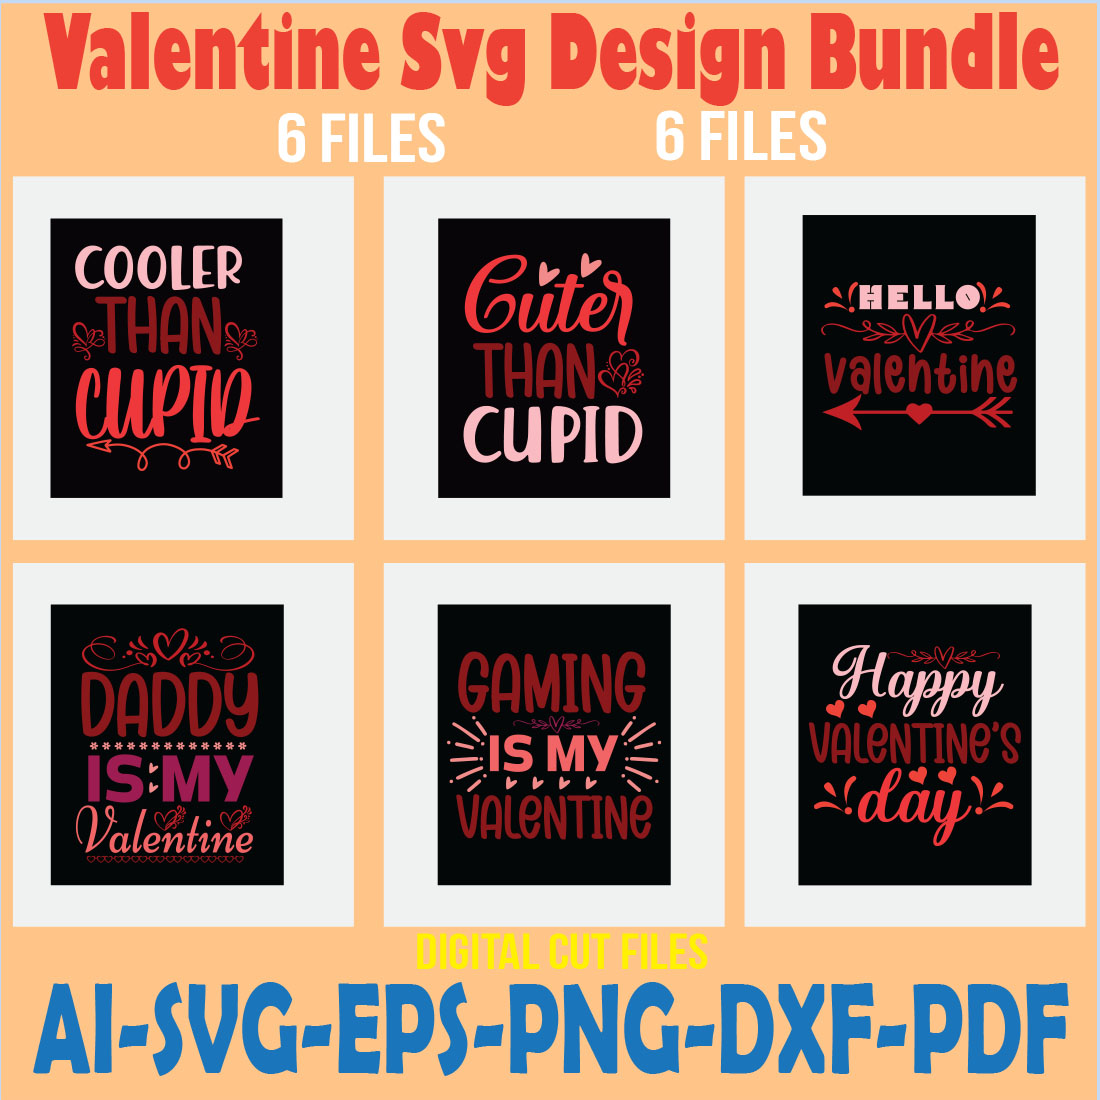 Valentine Svg Design Bundle cover image.